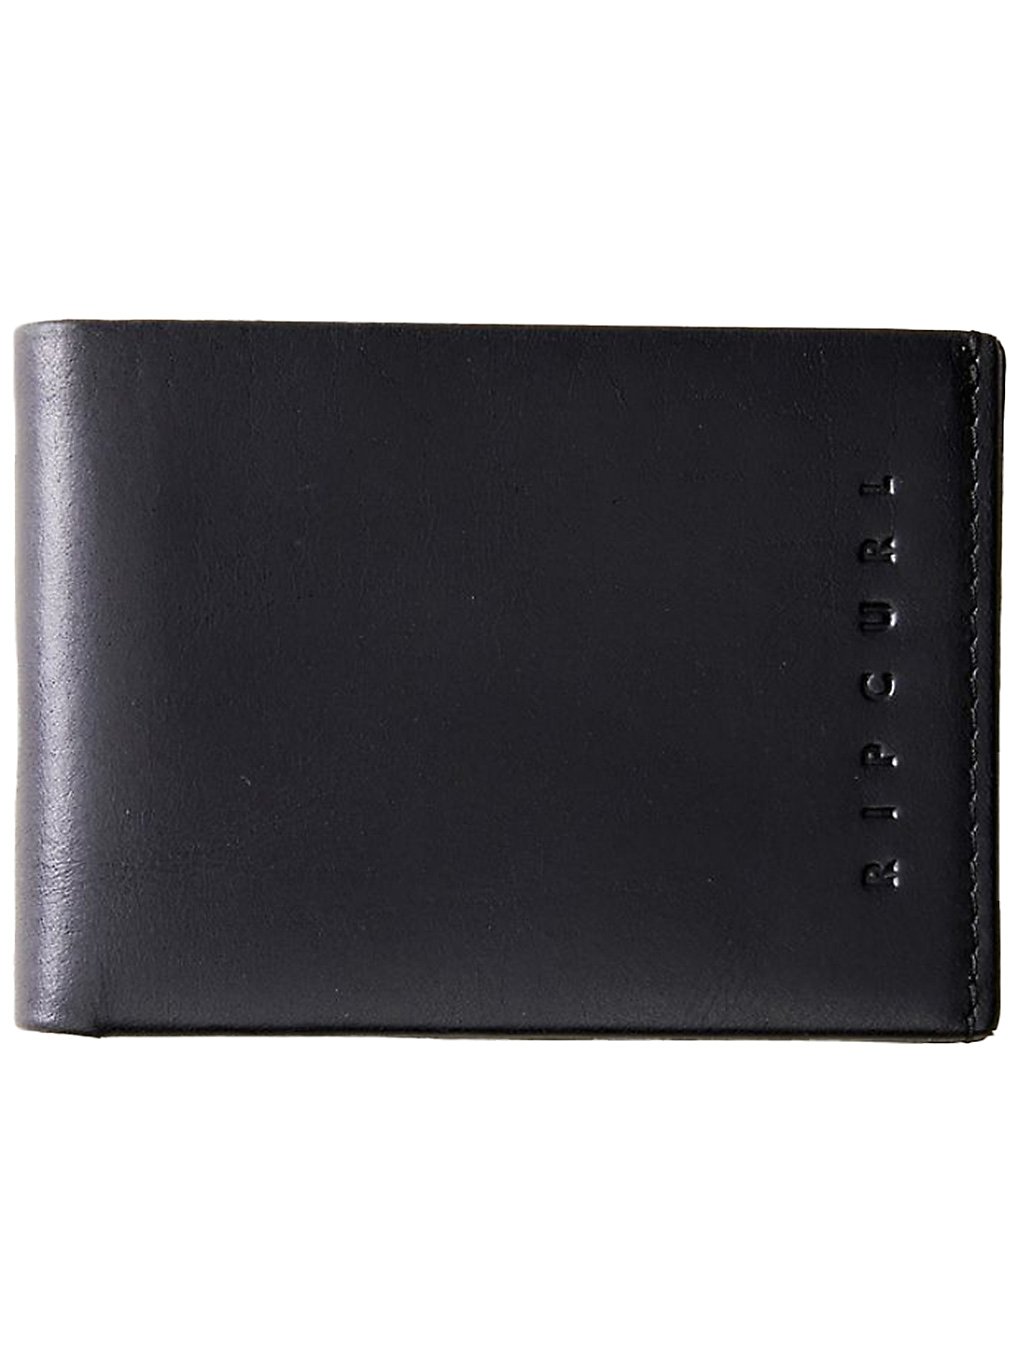 Rip Curl Vintage RFID Slim Wallet black